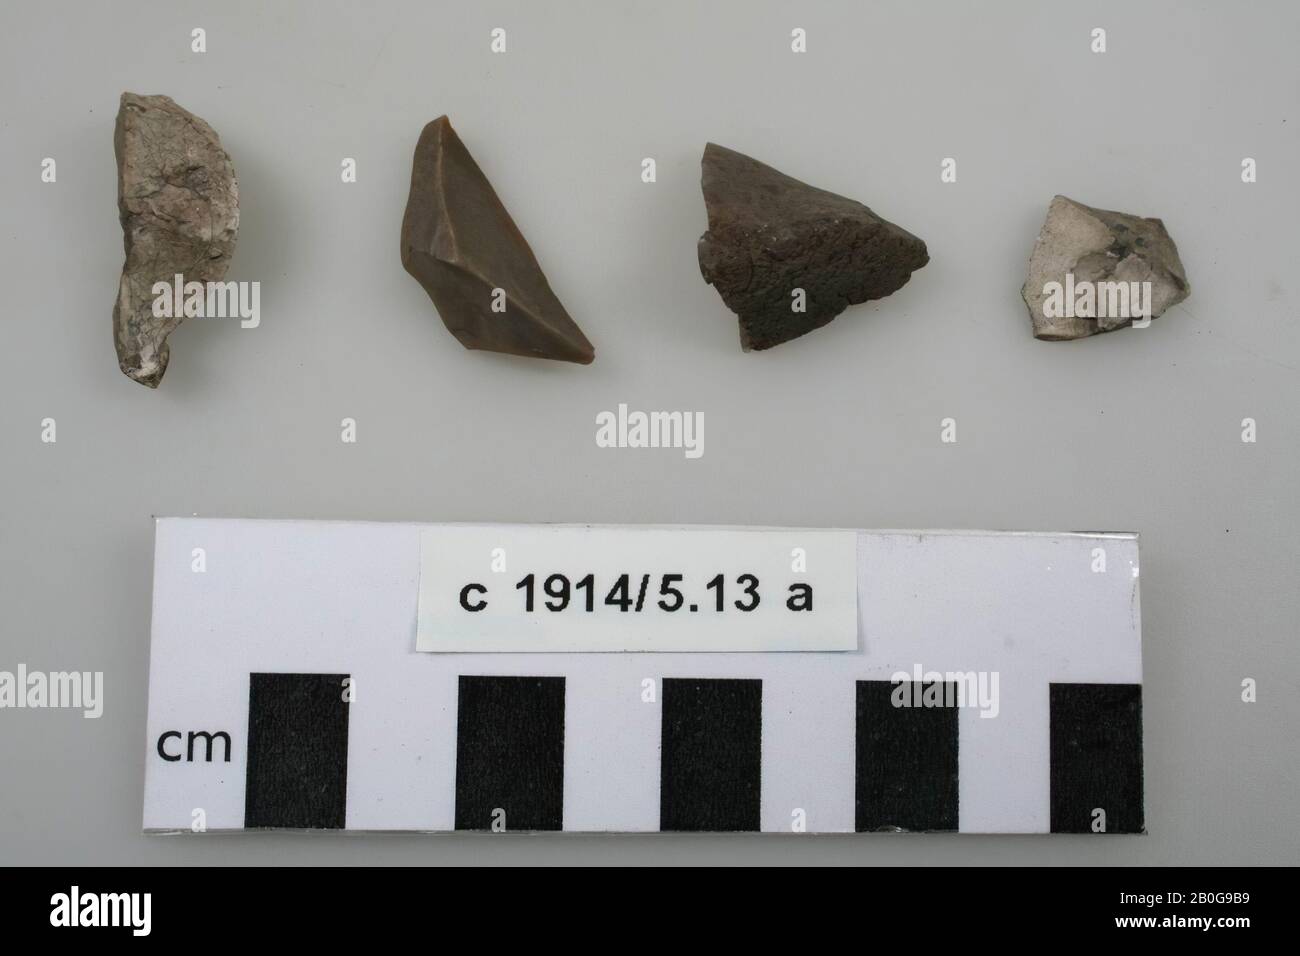 4 (fragmentos de?) herramientas de piedra, piedra, piedra, piedra, 2.6 x 2.5 x 1.3 cm (objeto más grande), prehistoria -1200 Foto de stock